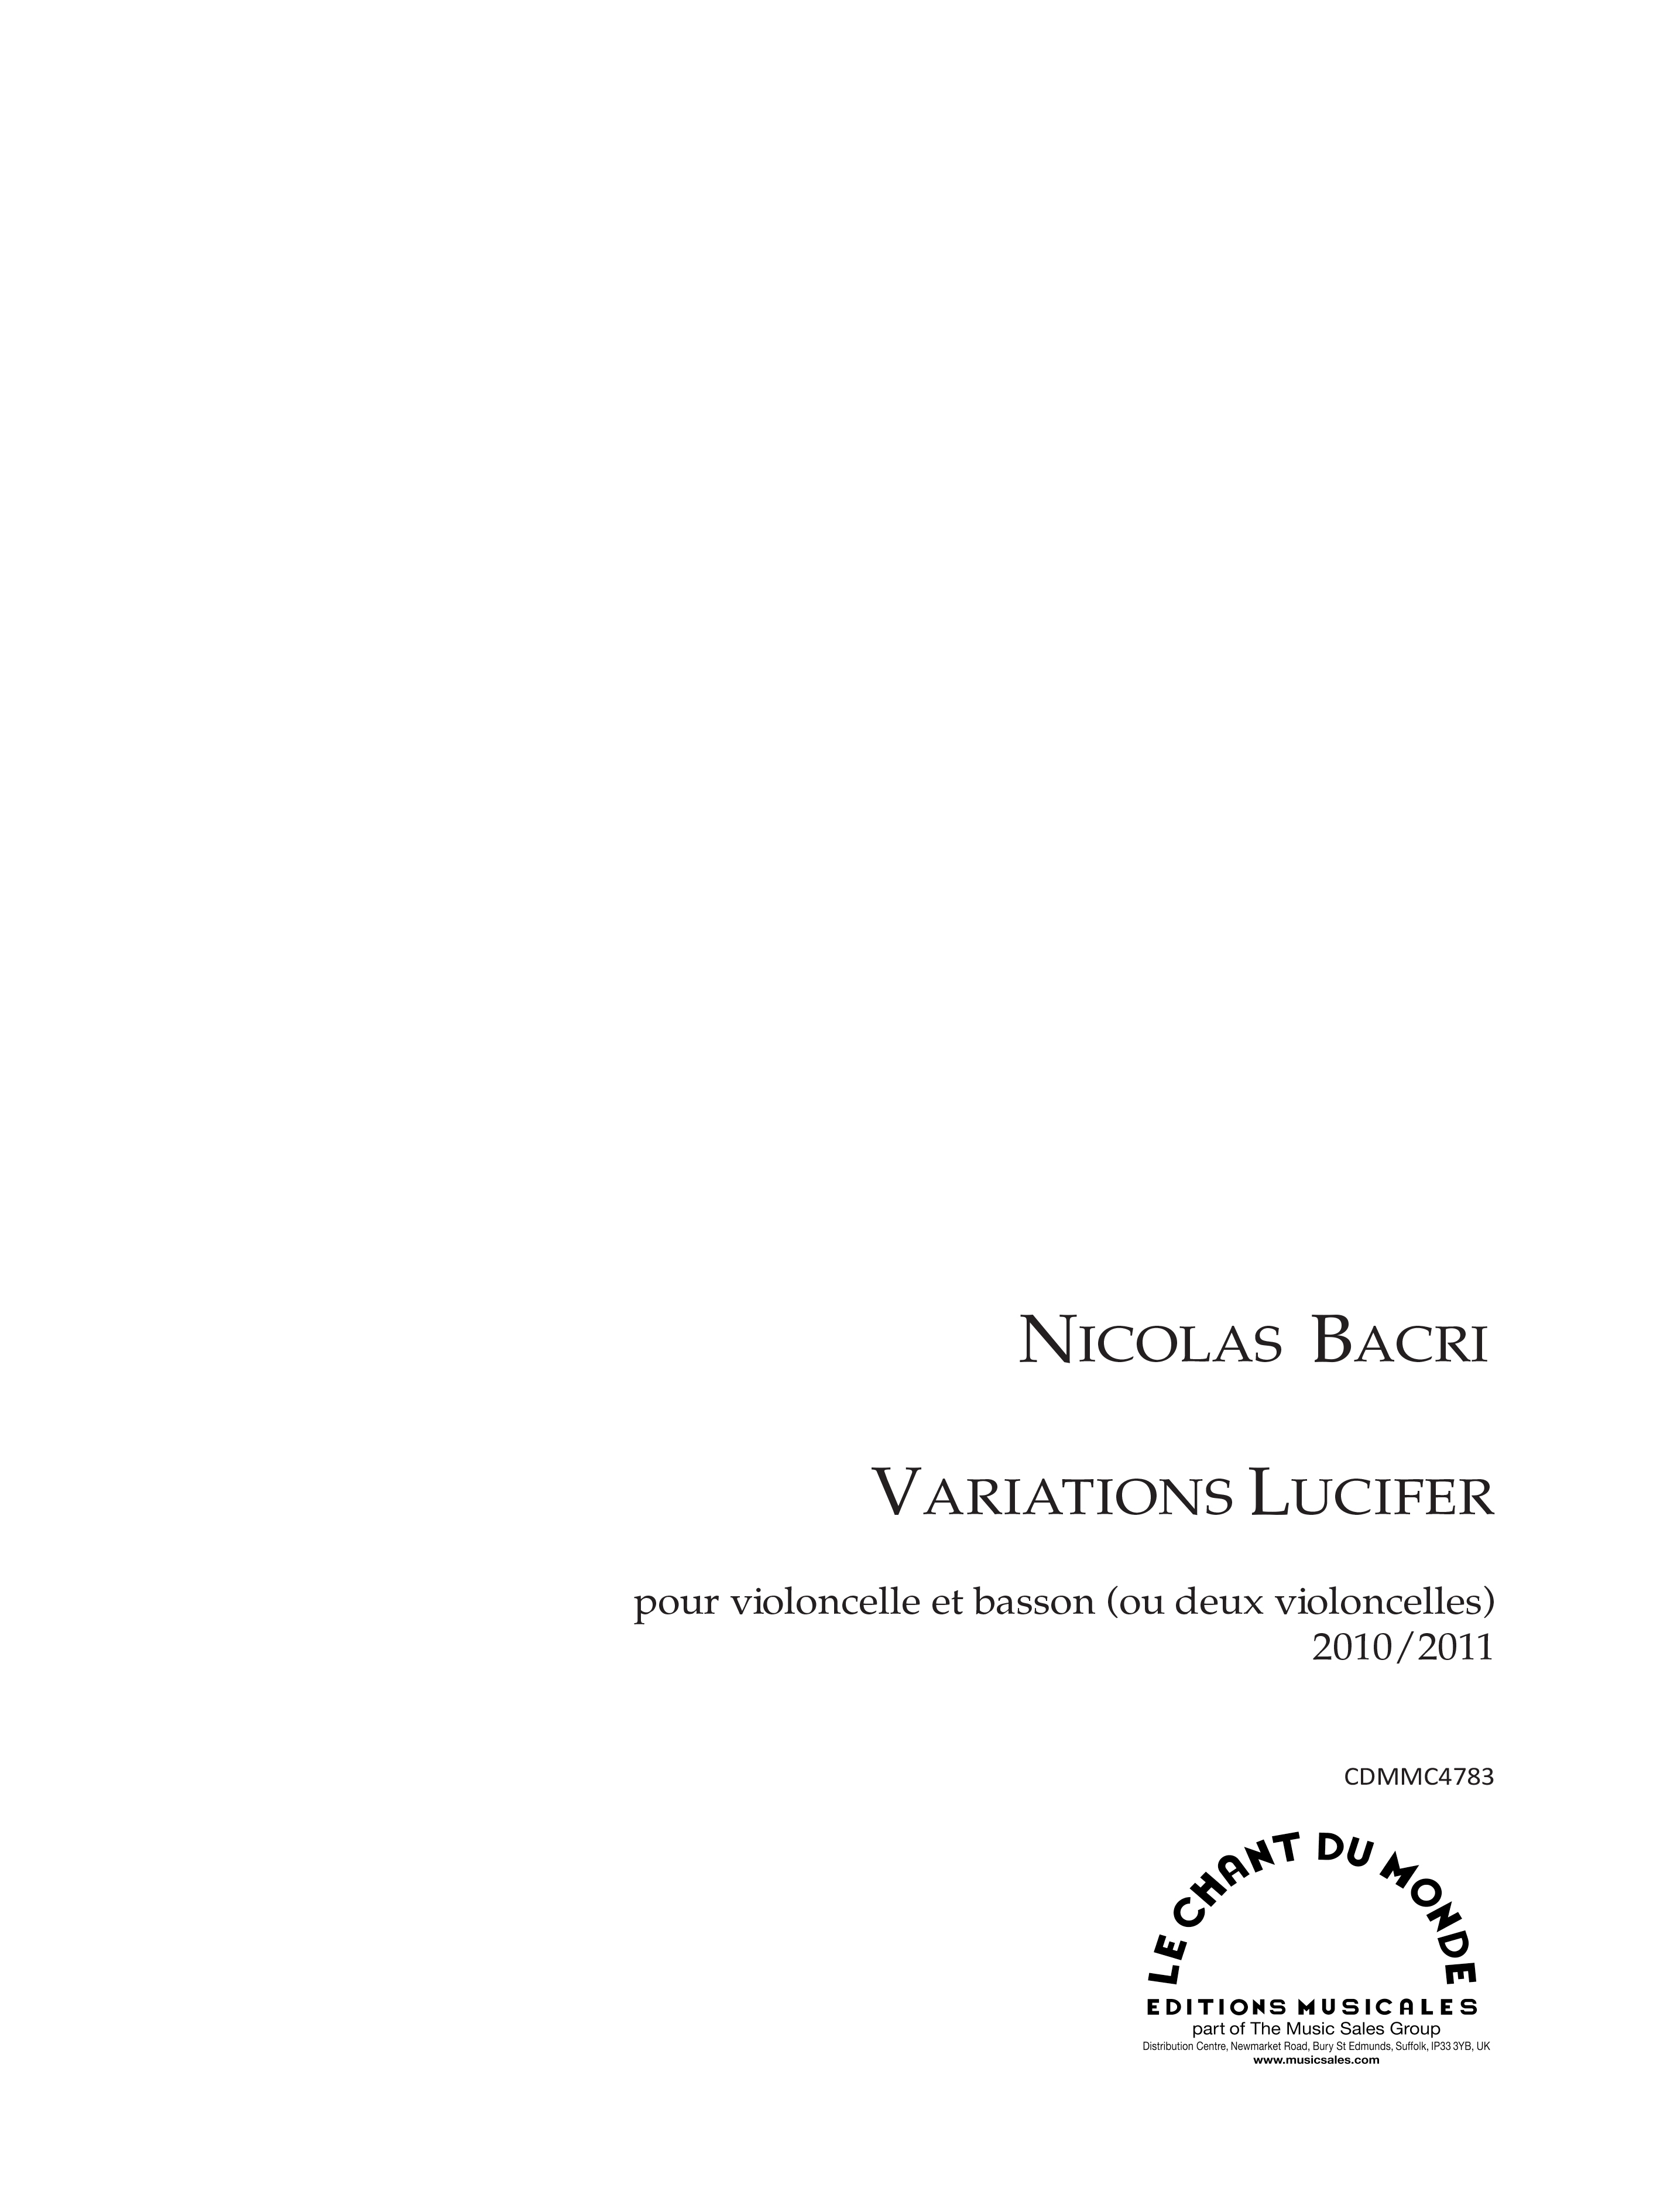 Nicolas Bacri: Variations Lucifer - Pour Violoncelle et Basson: Mixed Duet: